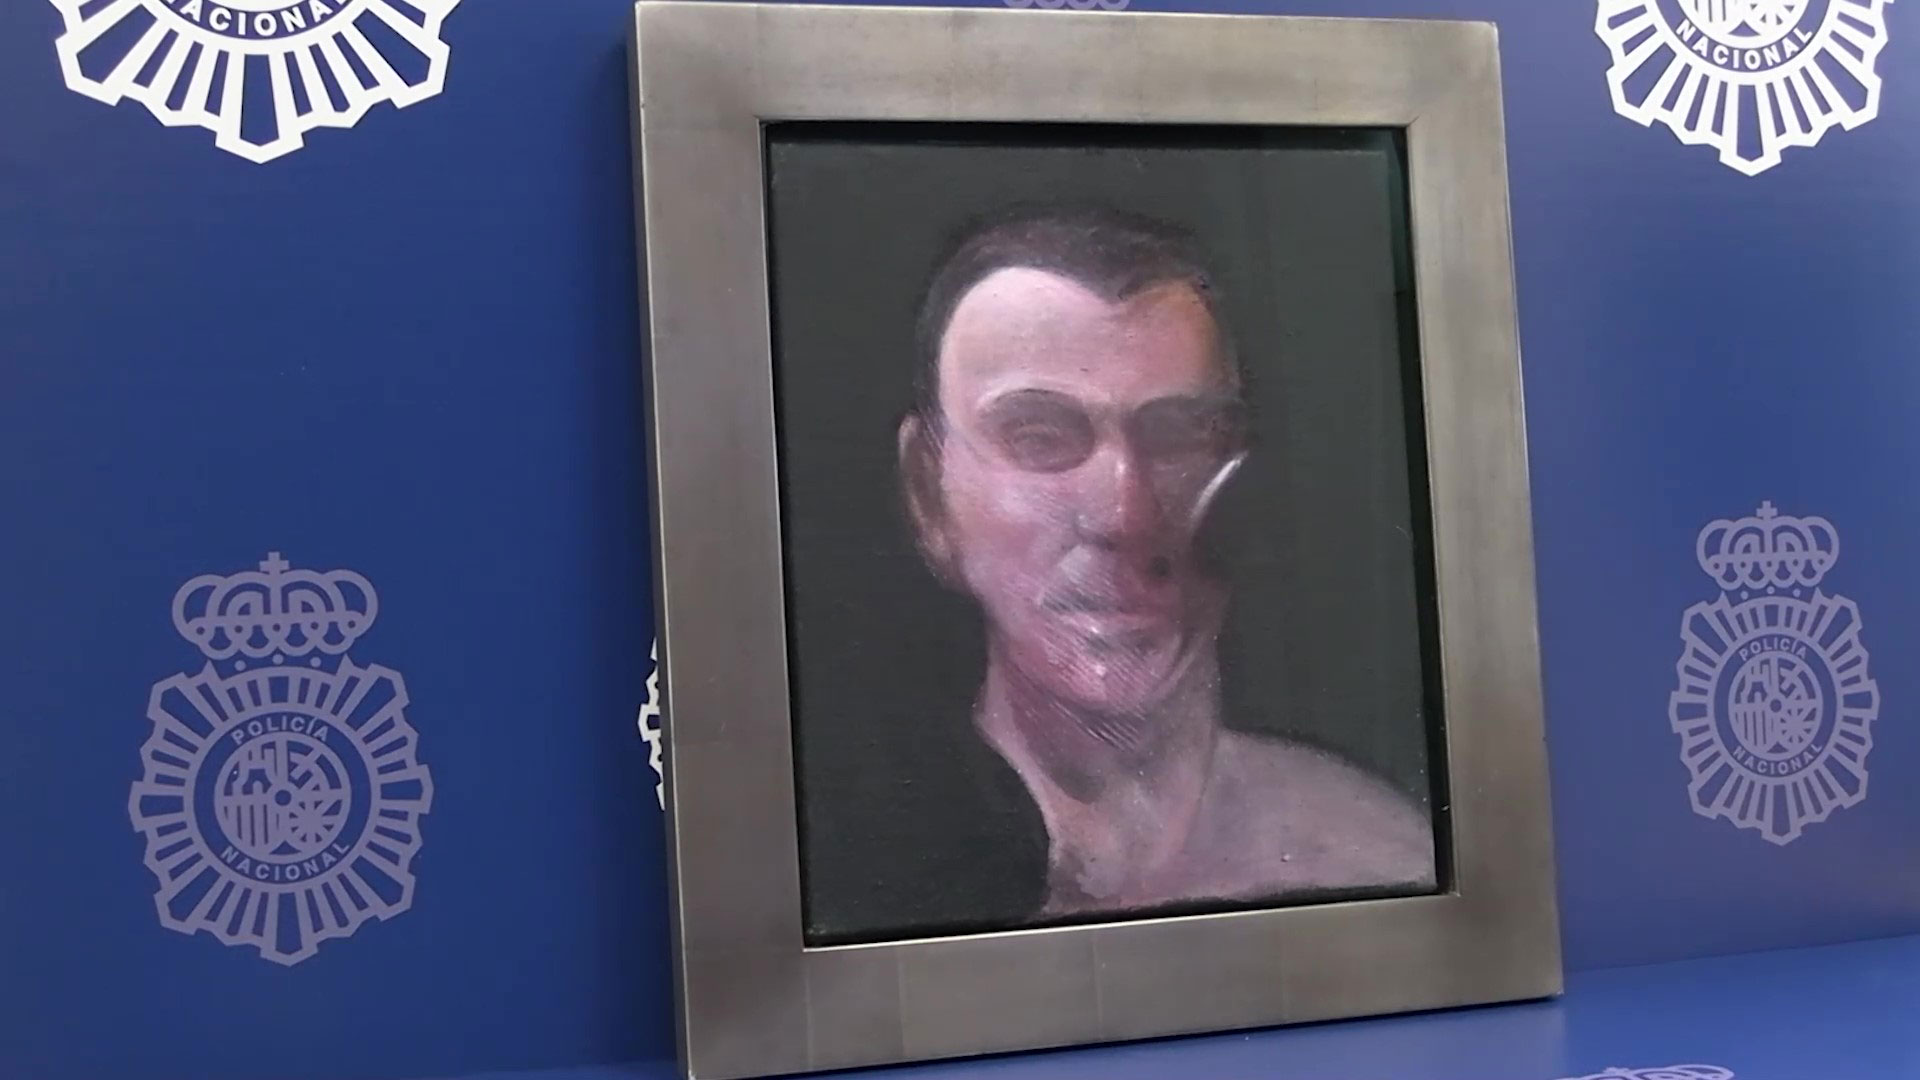 Retrat obra de l'artista Francis Bacon